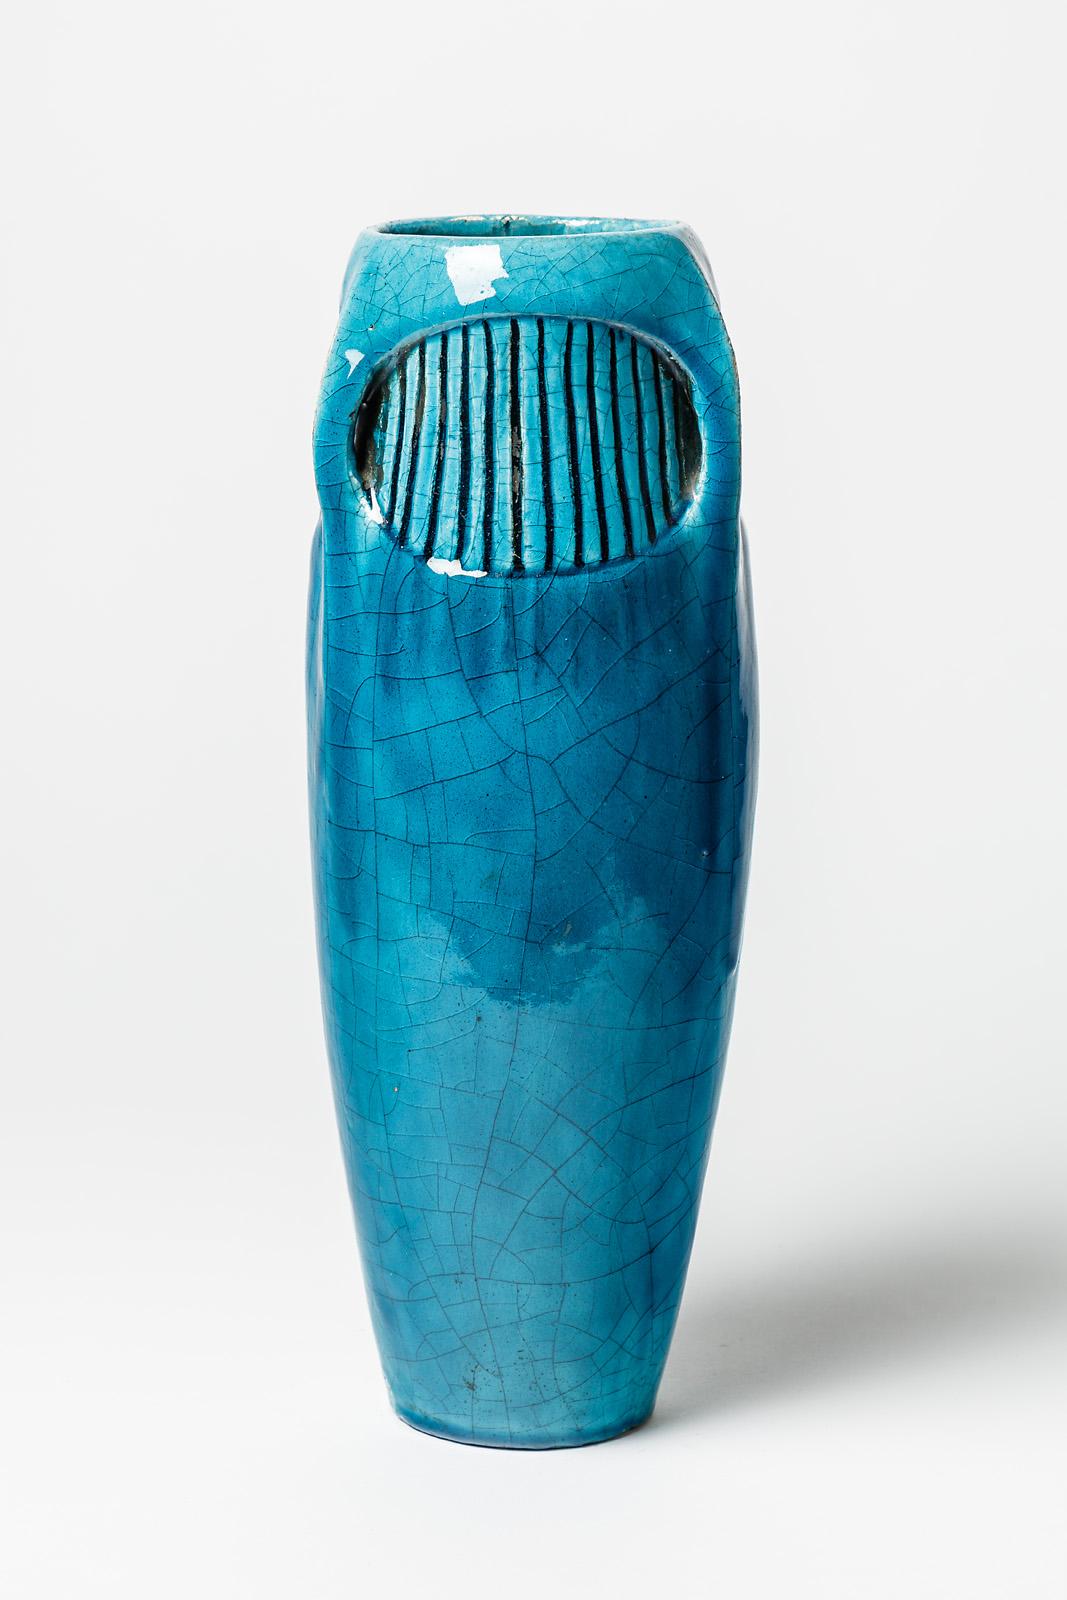 20th Century Large Blue Art Deco Ceramic Vase by Edmond Lachenal 1900 Decoration 